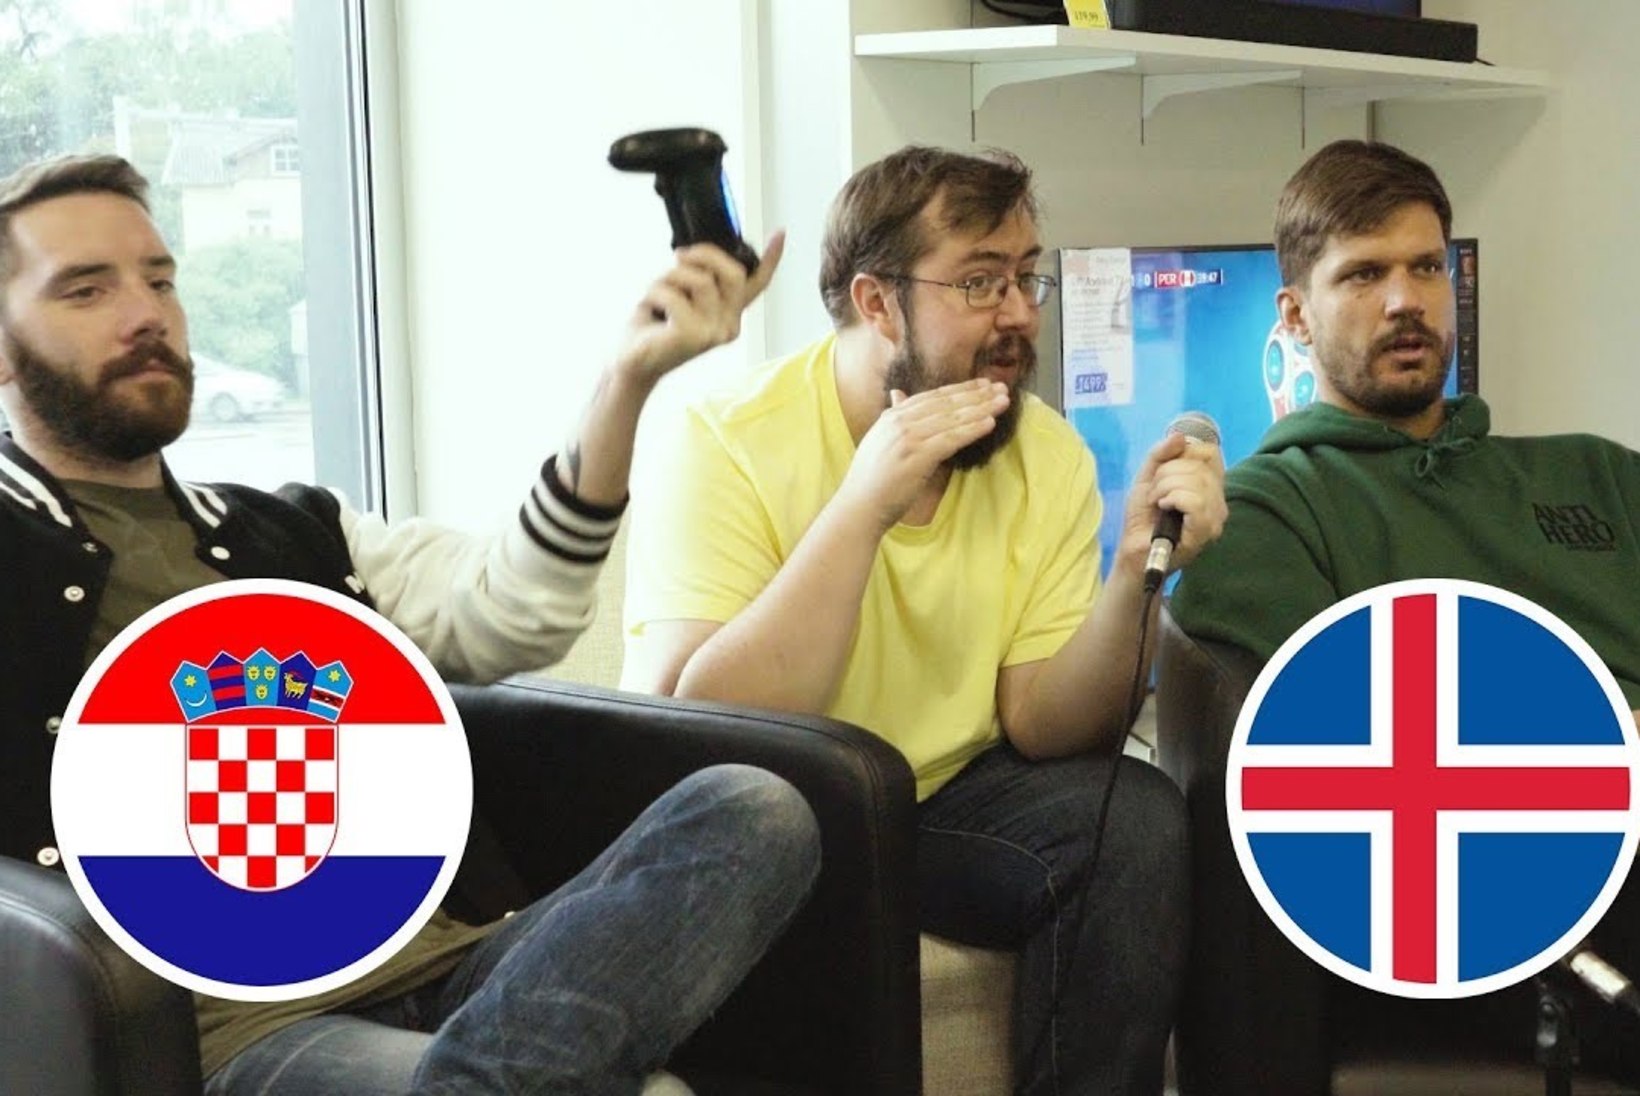 TAGANTJÄRELE TARKUS! Kas reket ennustas Island-Horvaatia mängu võitja õigesti?